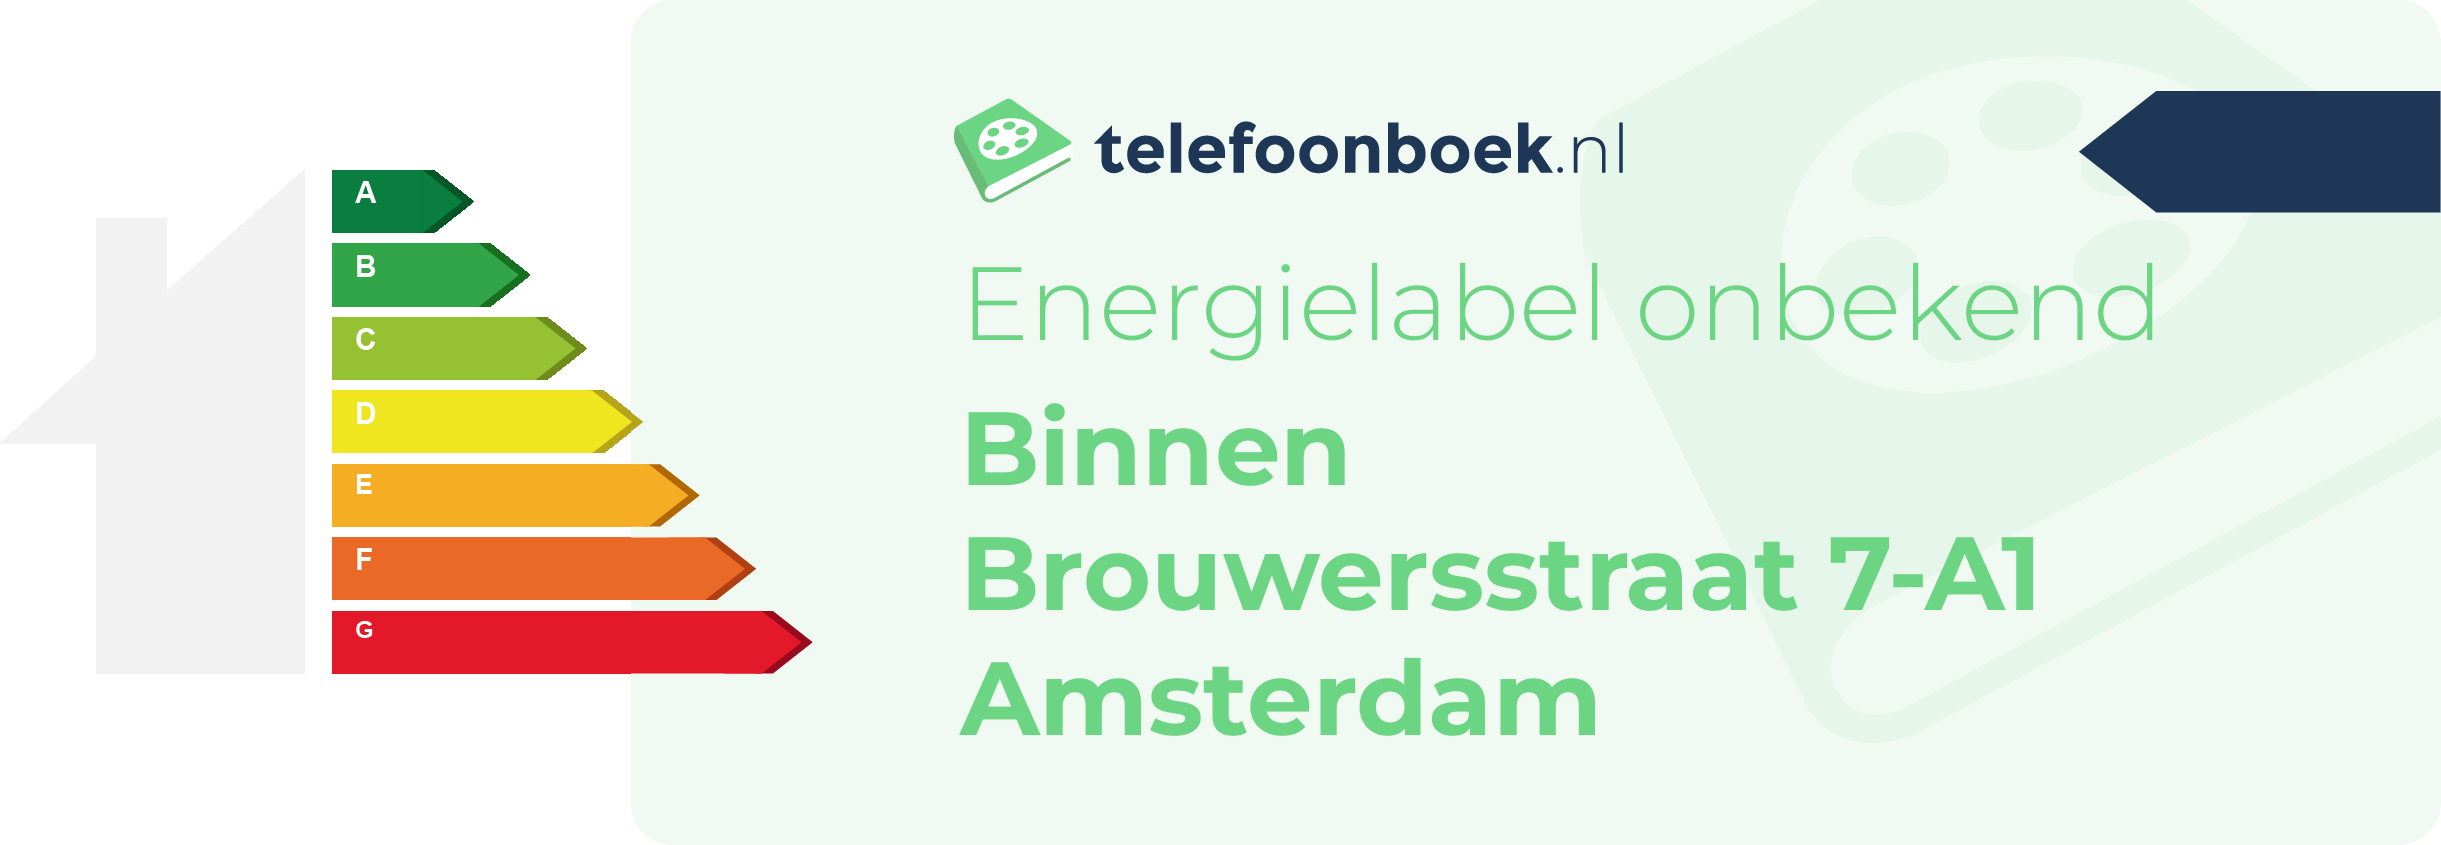 Energielabel Binnen Brouwersstraat 7-A1 Amsterdam